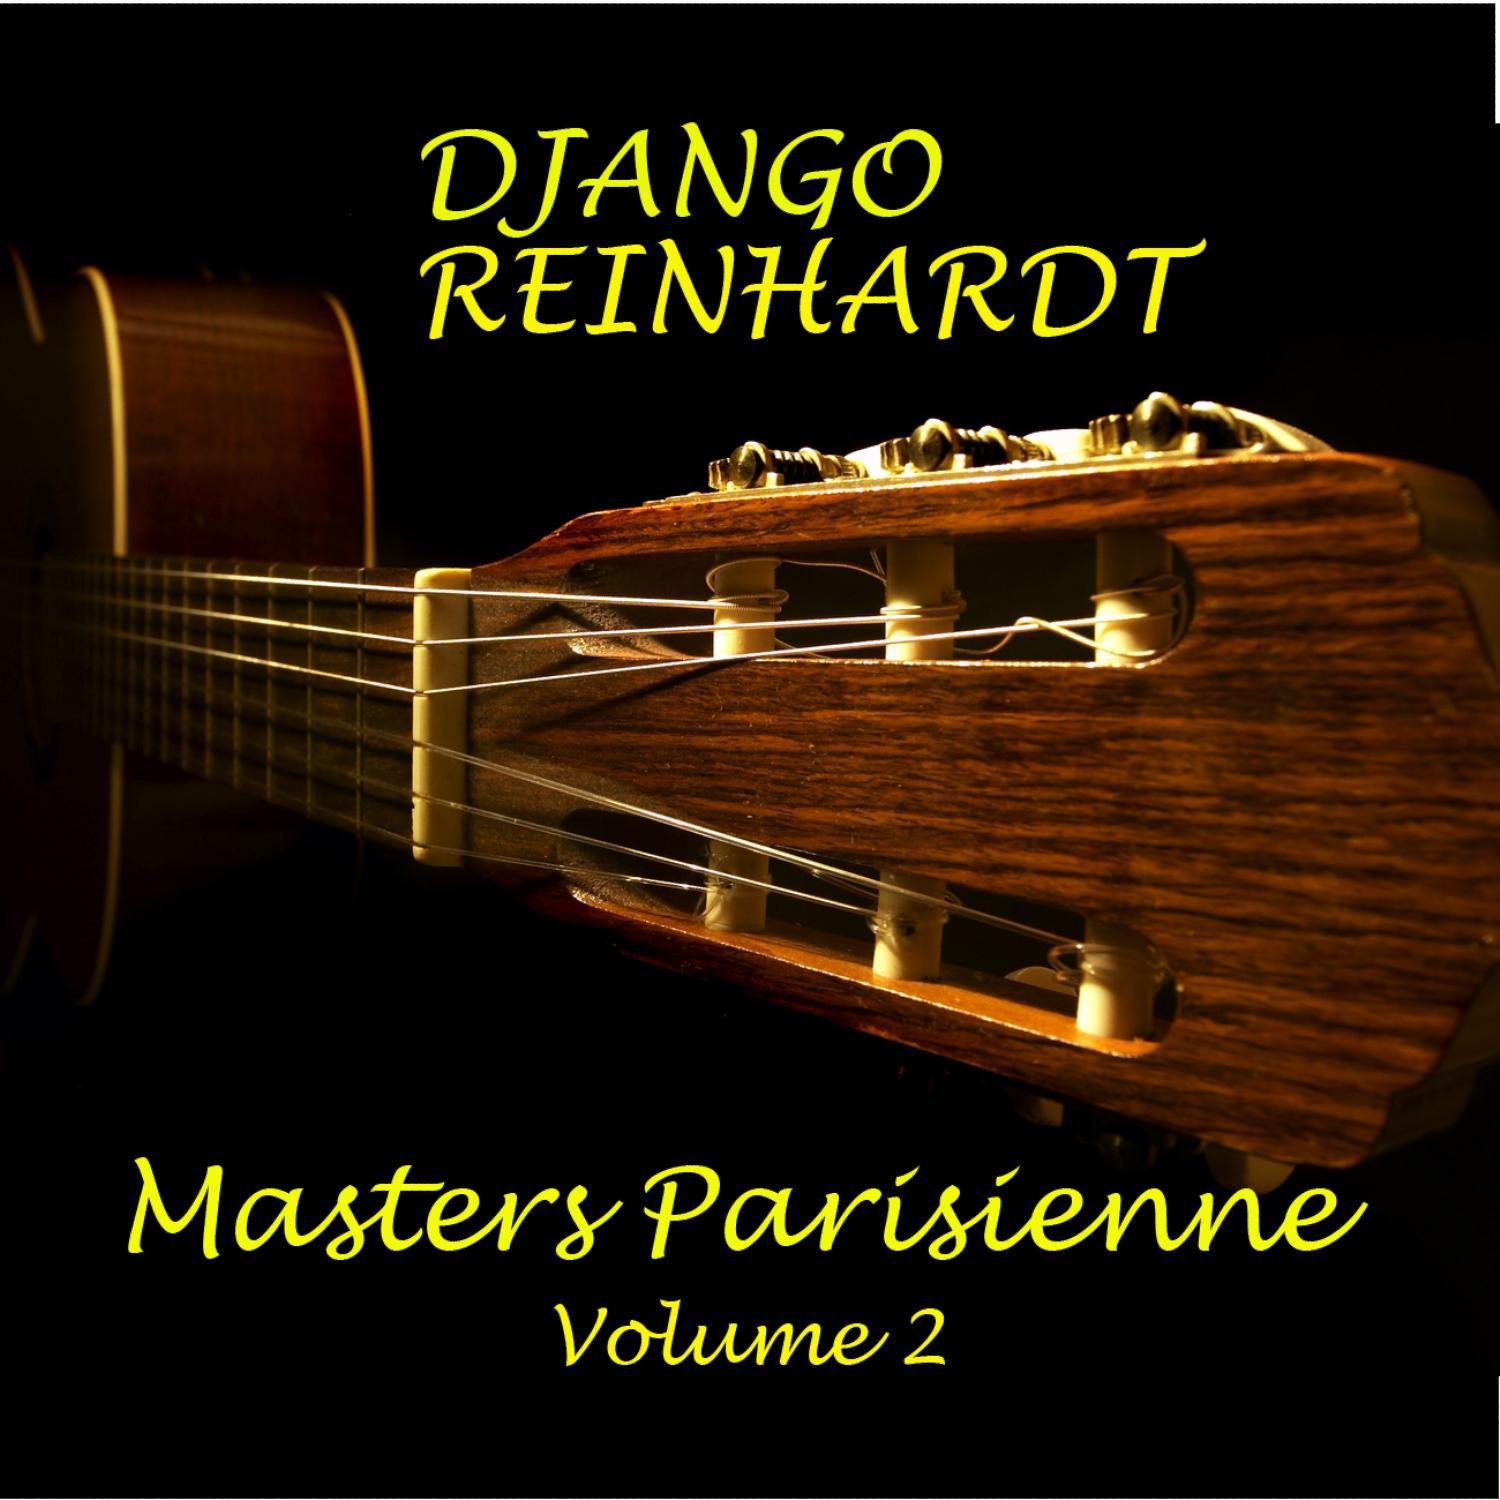 Masters Parisienne Vol 2